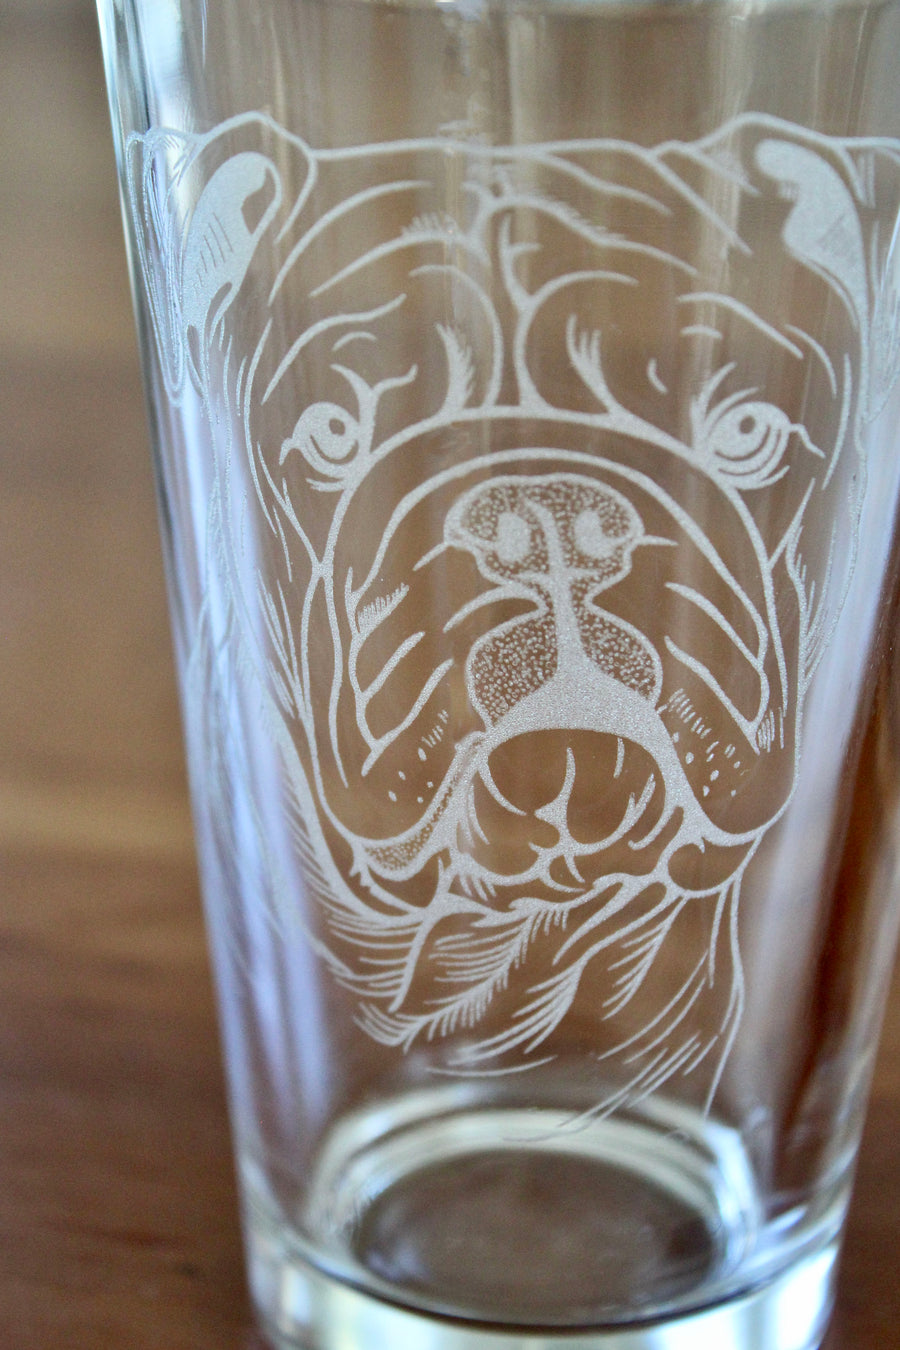 Bulldog Engraved Glasses